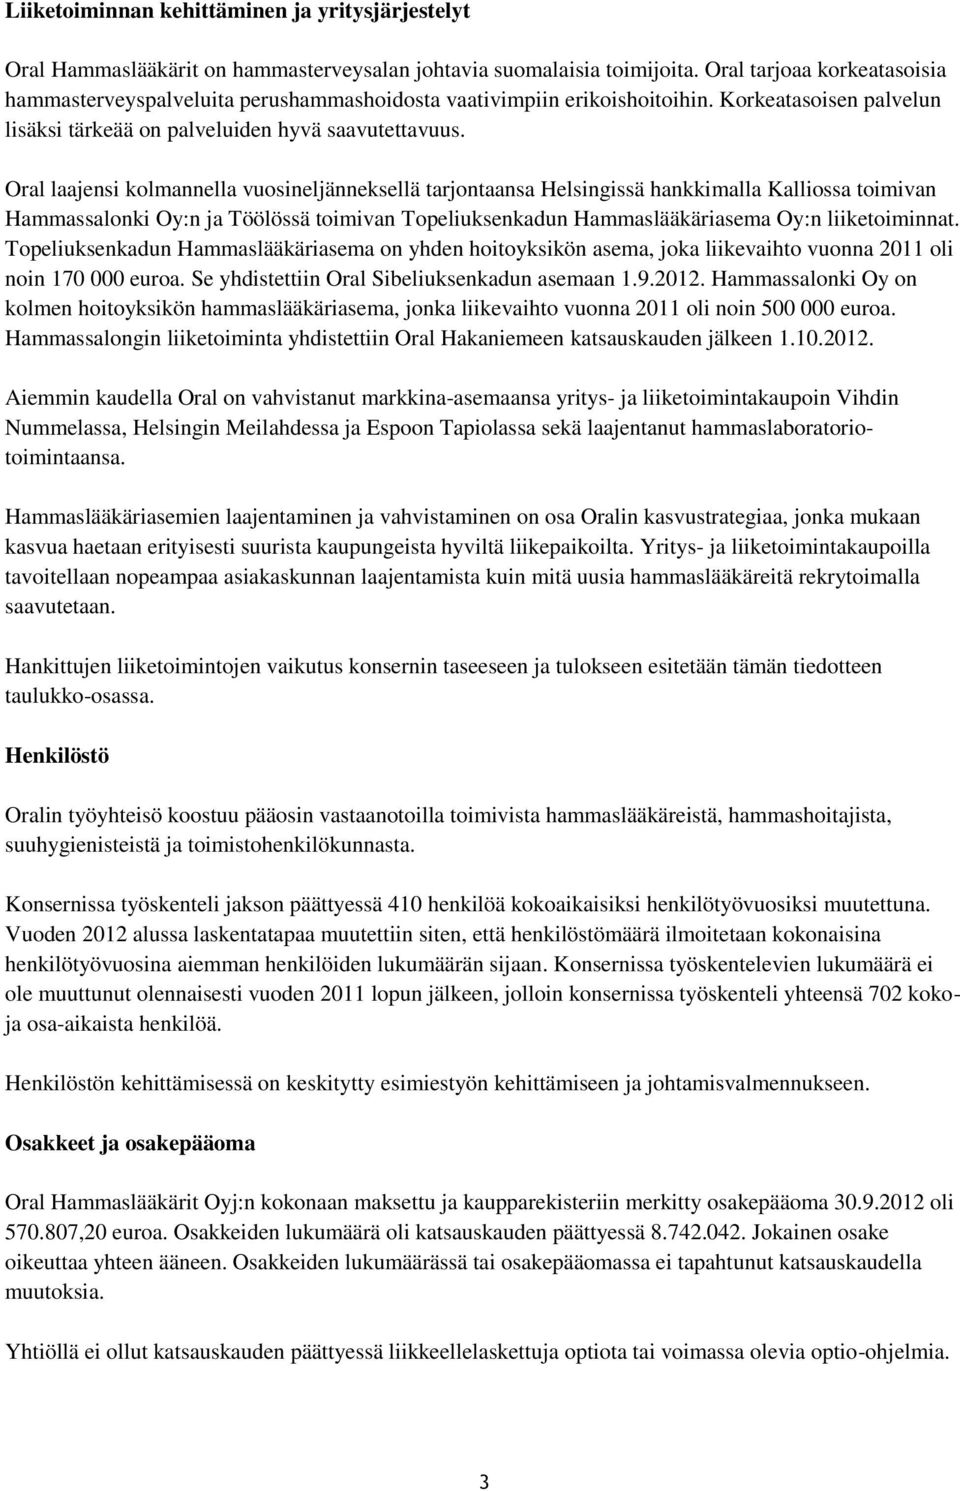 Oral laajensi kolmannella vuosineljänneksellä tarjontaansa Helsingissä hankkimalla Kalliossa toimivan Hammassalonki Oy:n ja Töölössä toimivan Topeliuksenkadun Hammaslääkäriasema Oy:n liiketoiminnat.